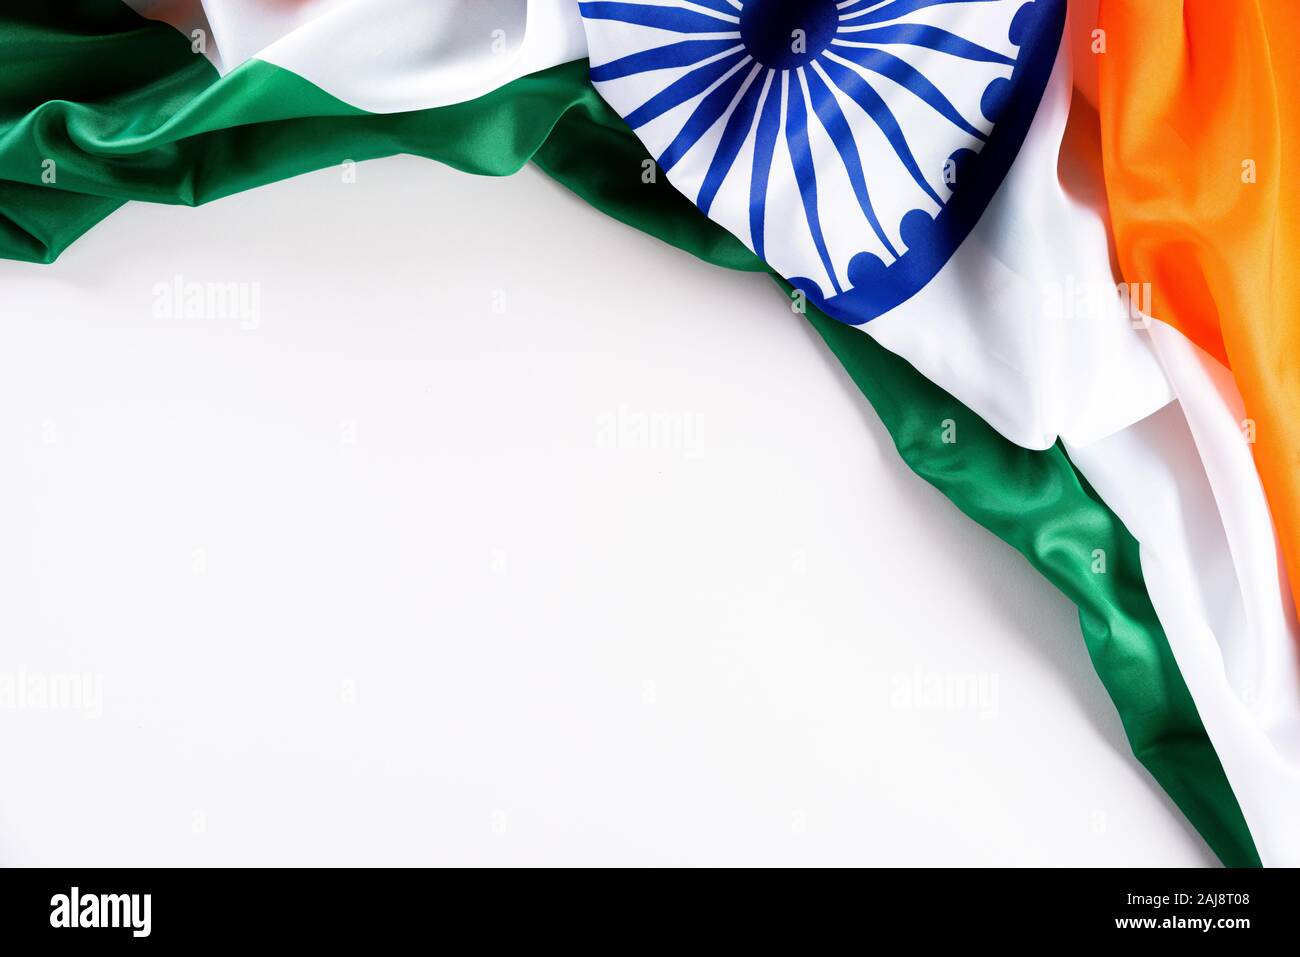 Hãy cùng tìm hiểu khái niệm Ngày Lễ Cộng hòa Ấn Độ và chiêm ngưỡng vẻ đẹp của Quốc kỳ Ấn Độ kết hợp với văn bản Chúc mừng trong hình ảnh đầy ý nghĩa này.